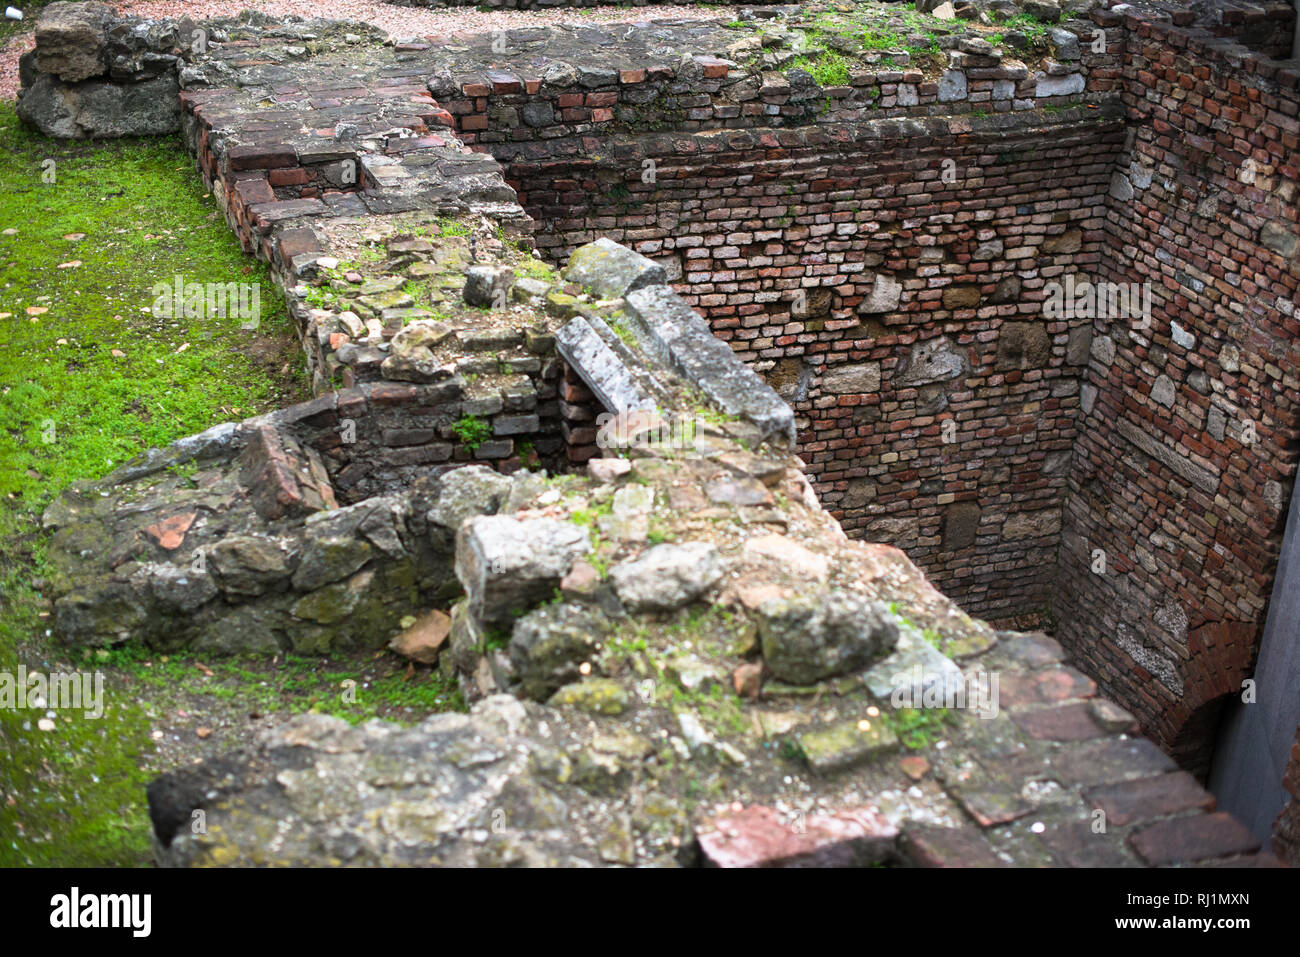 Überreste einer römischen Militärlager Vindobona am Michaelerplatz, Wien, Österreich. Stockfoto